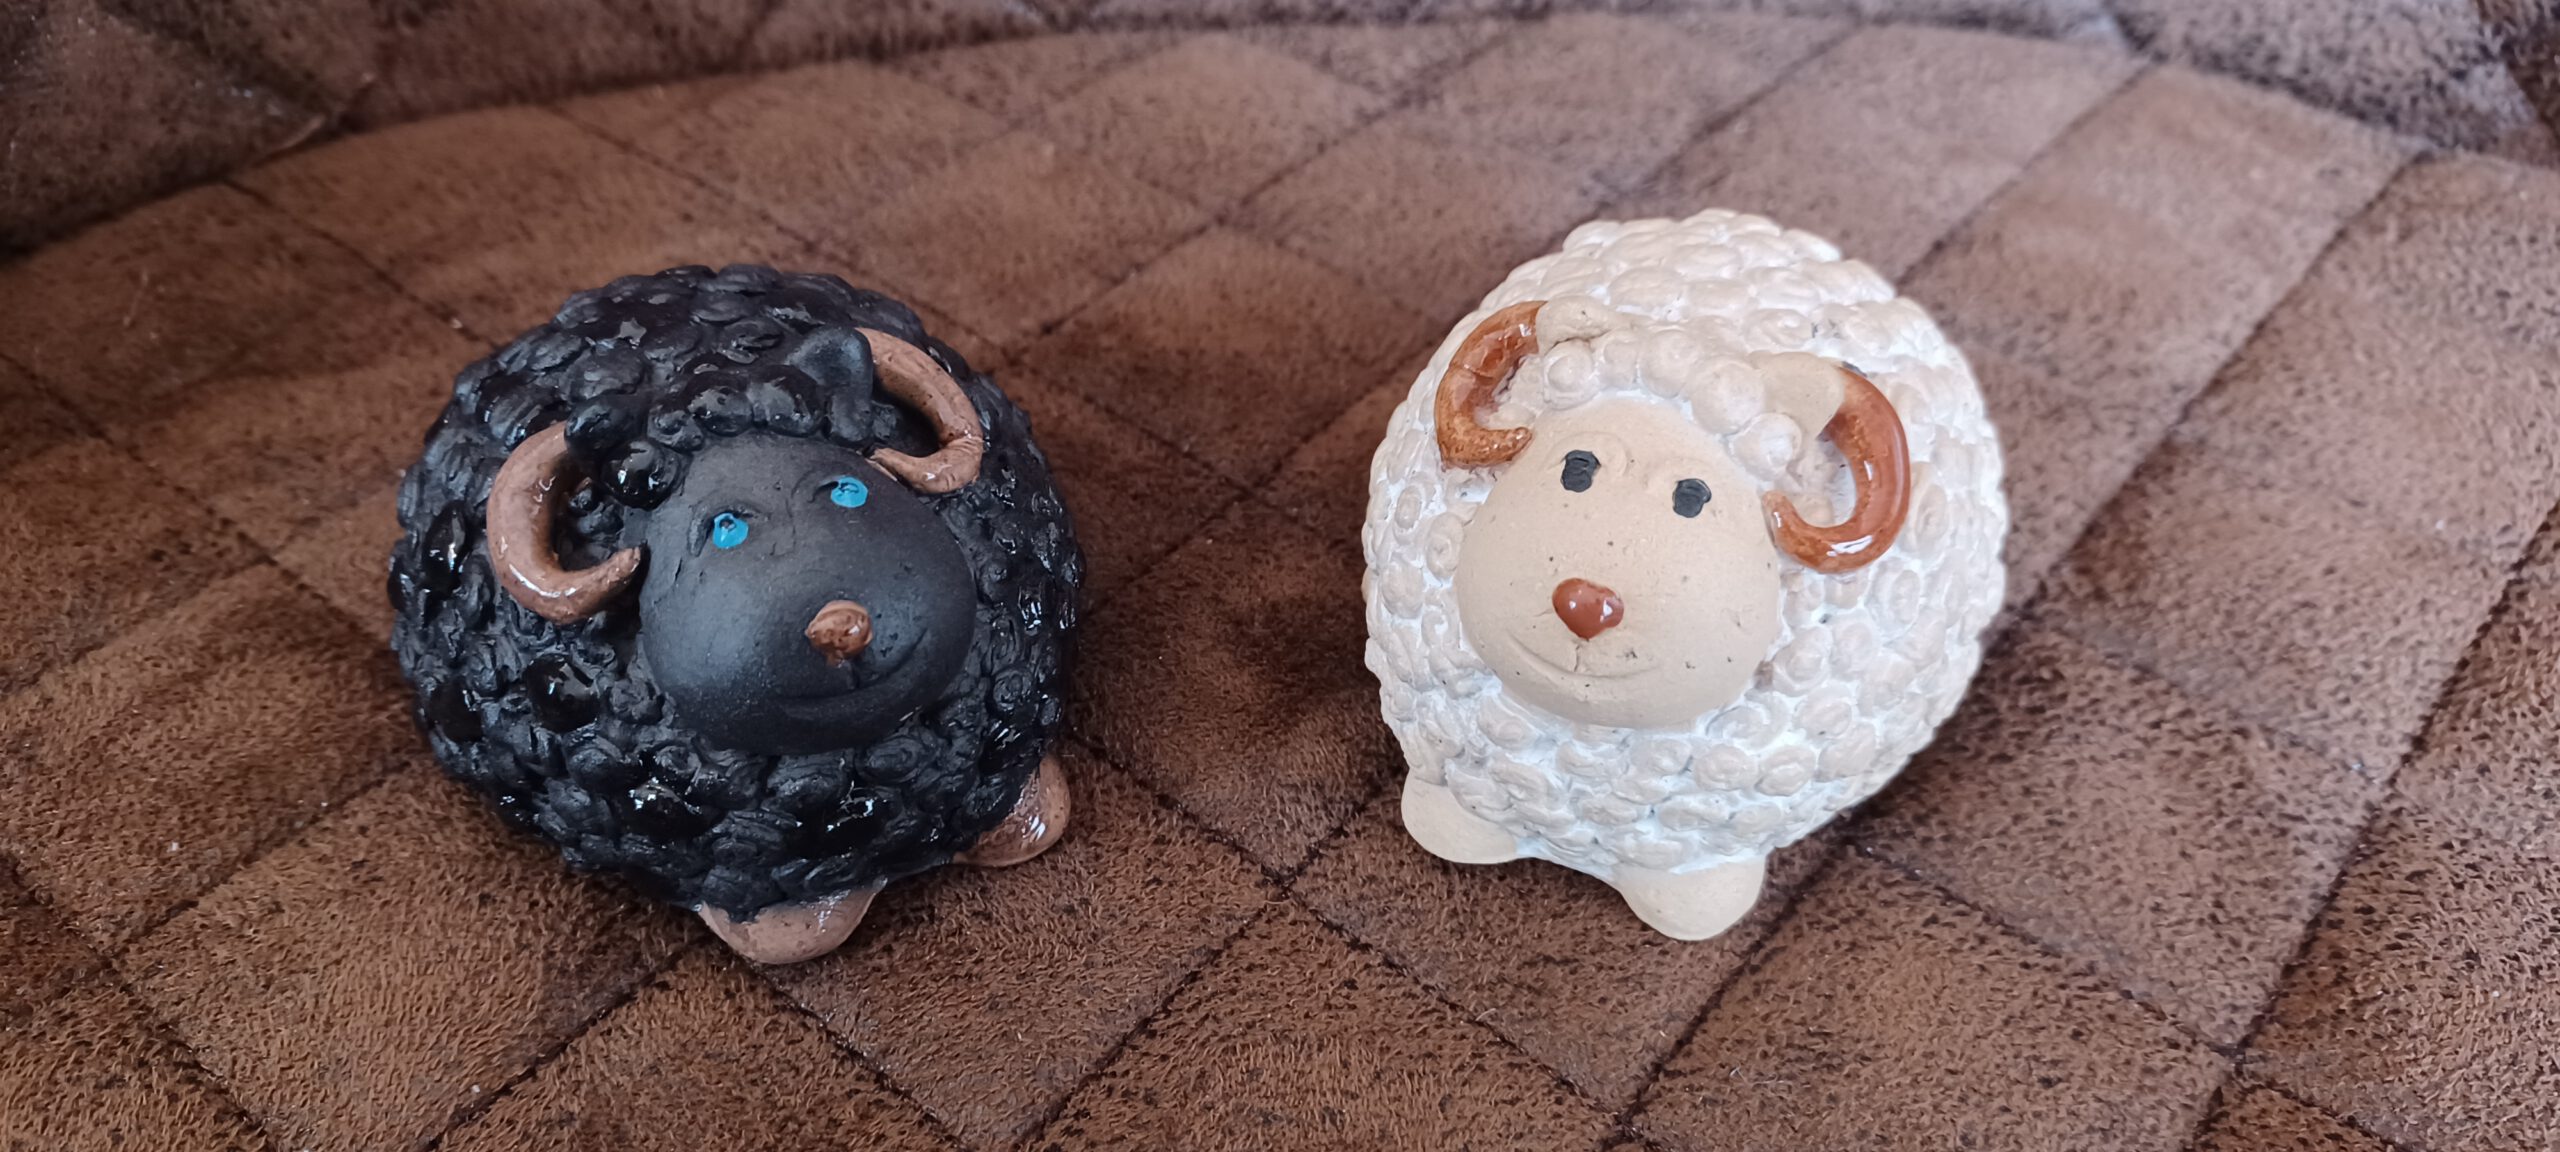 Schäfchen, Keramik Schafe, weiß & schwarzes Keramik Schaf Paar, handgefertigte Keramik Unikate, Geschenke aus Keramik, KeraMik von Herz zu Herz